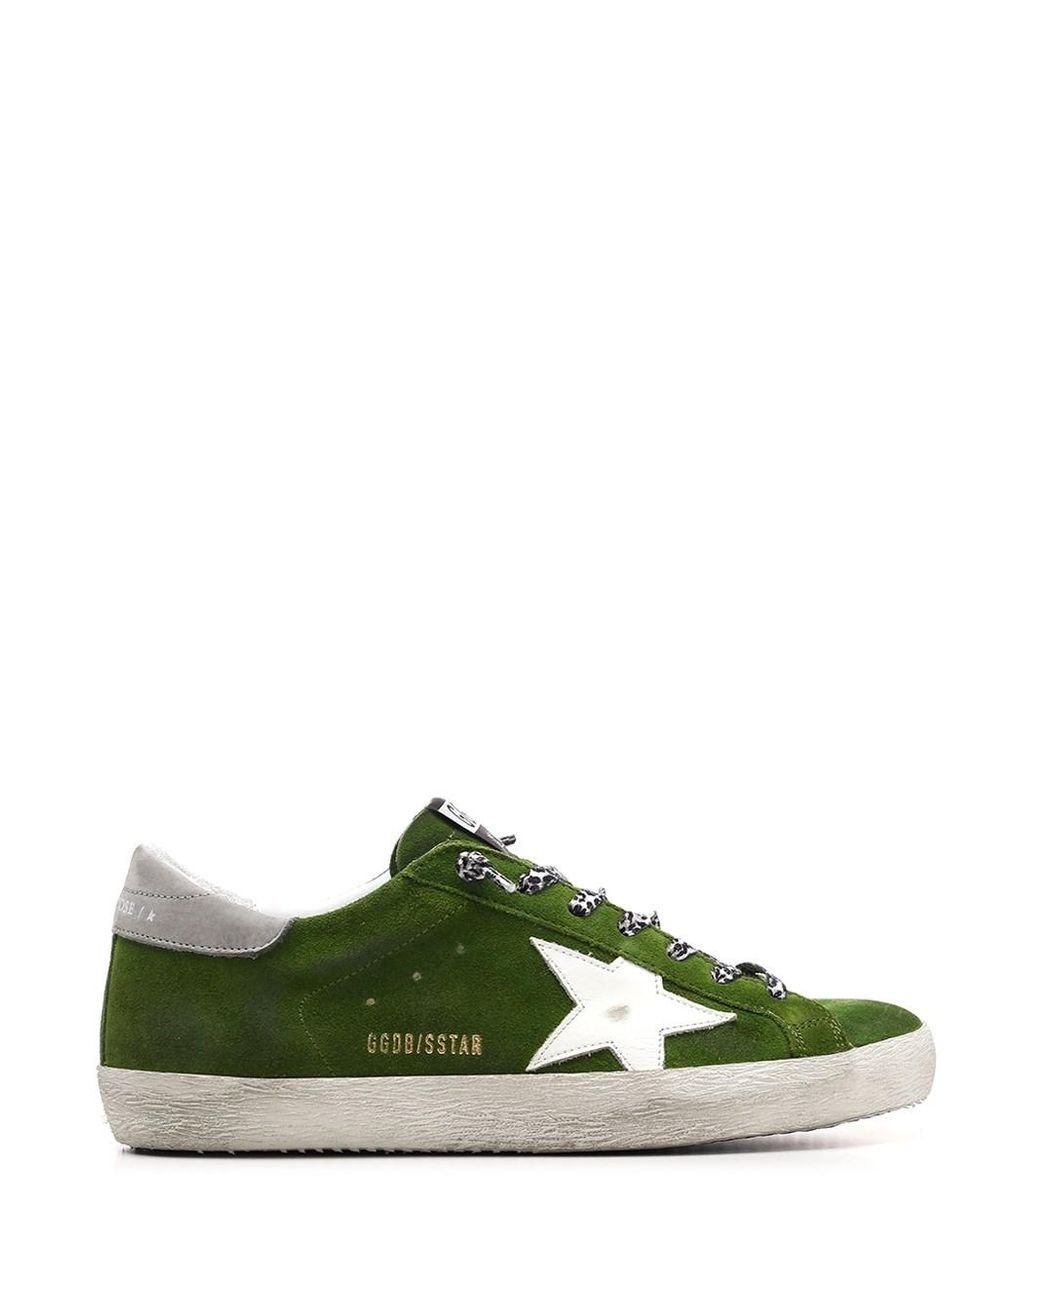 Golden Goose Deluxe Brand Superstar Sneakers In Suede in Green for Men ...